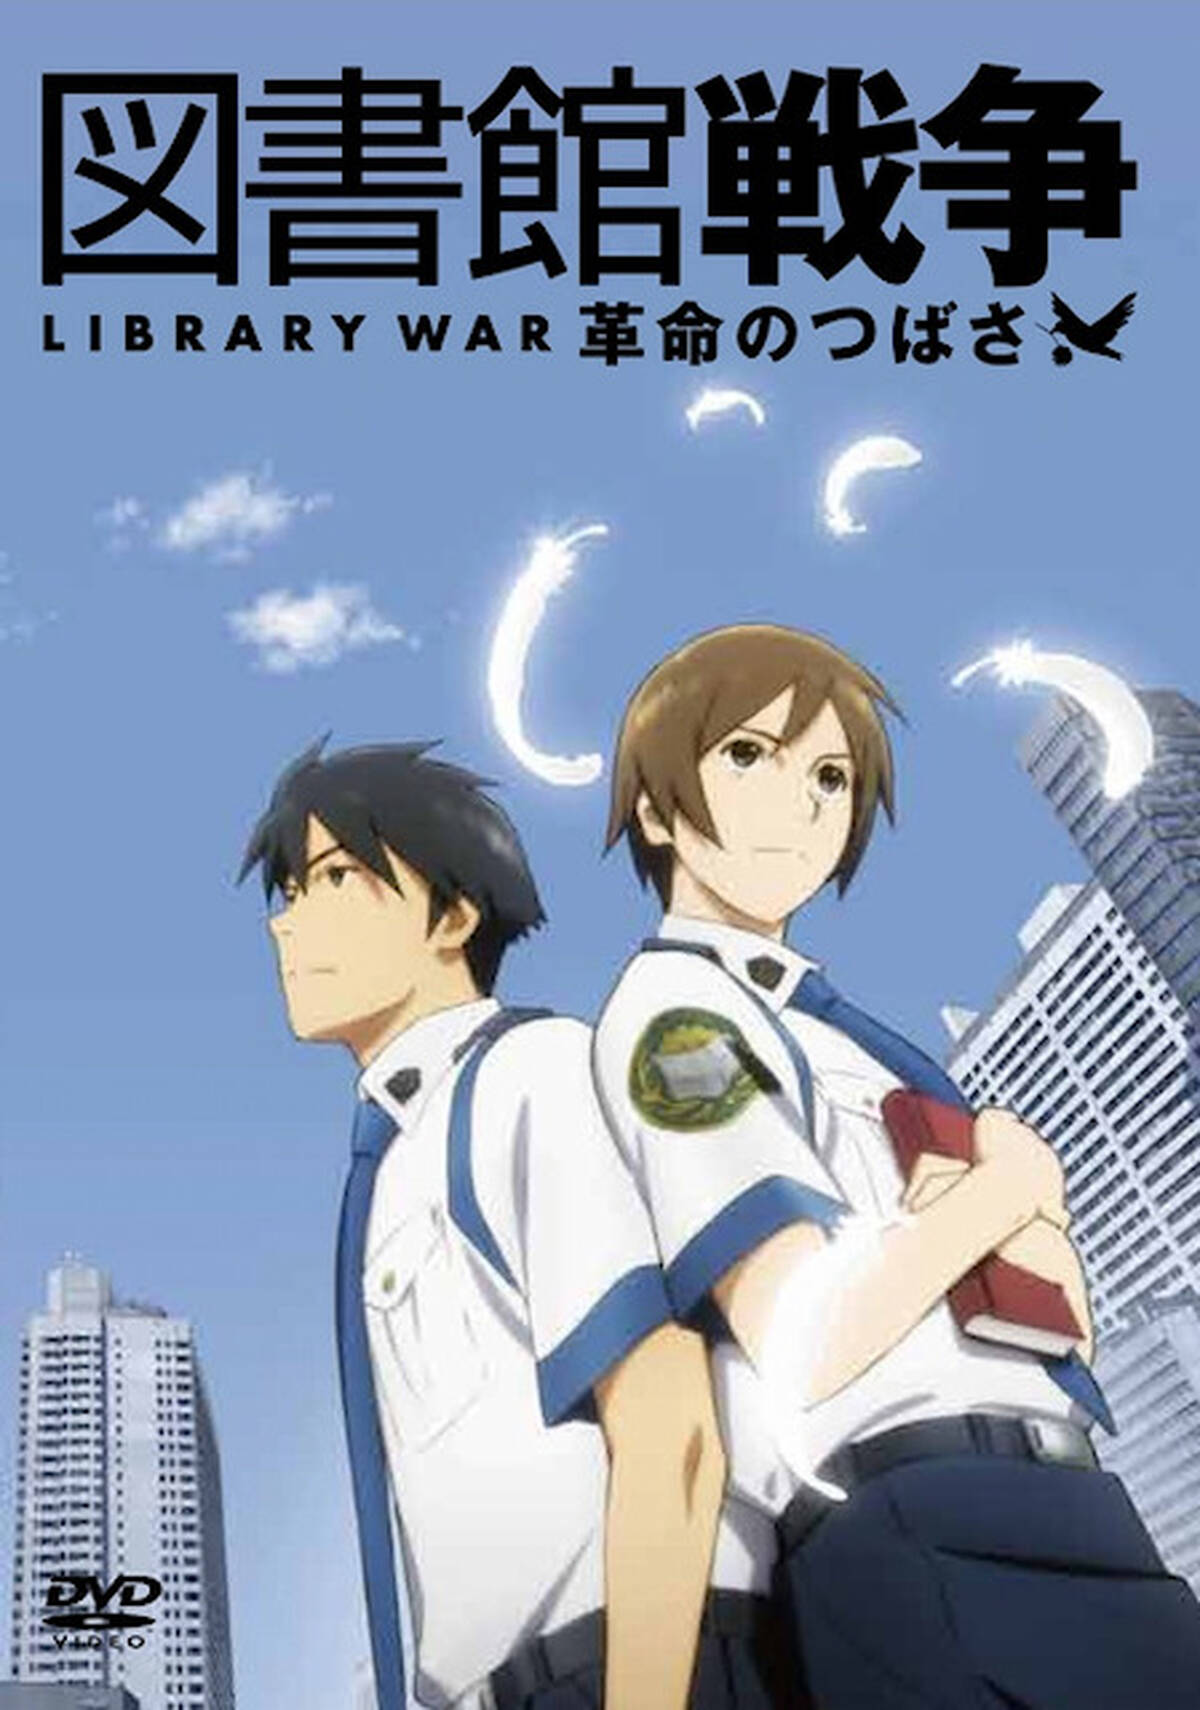 図書館戦争 アニメ版と実写版の無料コラボイベントを9月に開催 映画2本の上映とトークショー アキバ総研